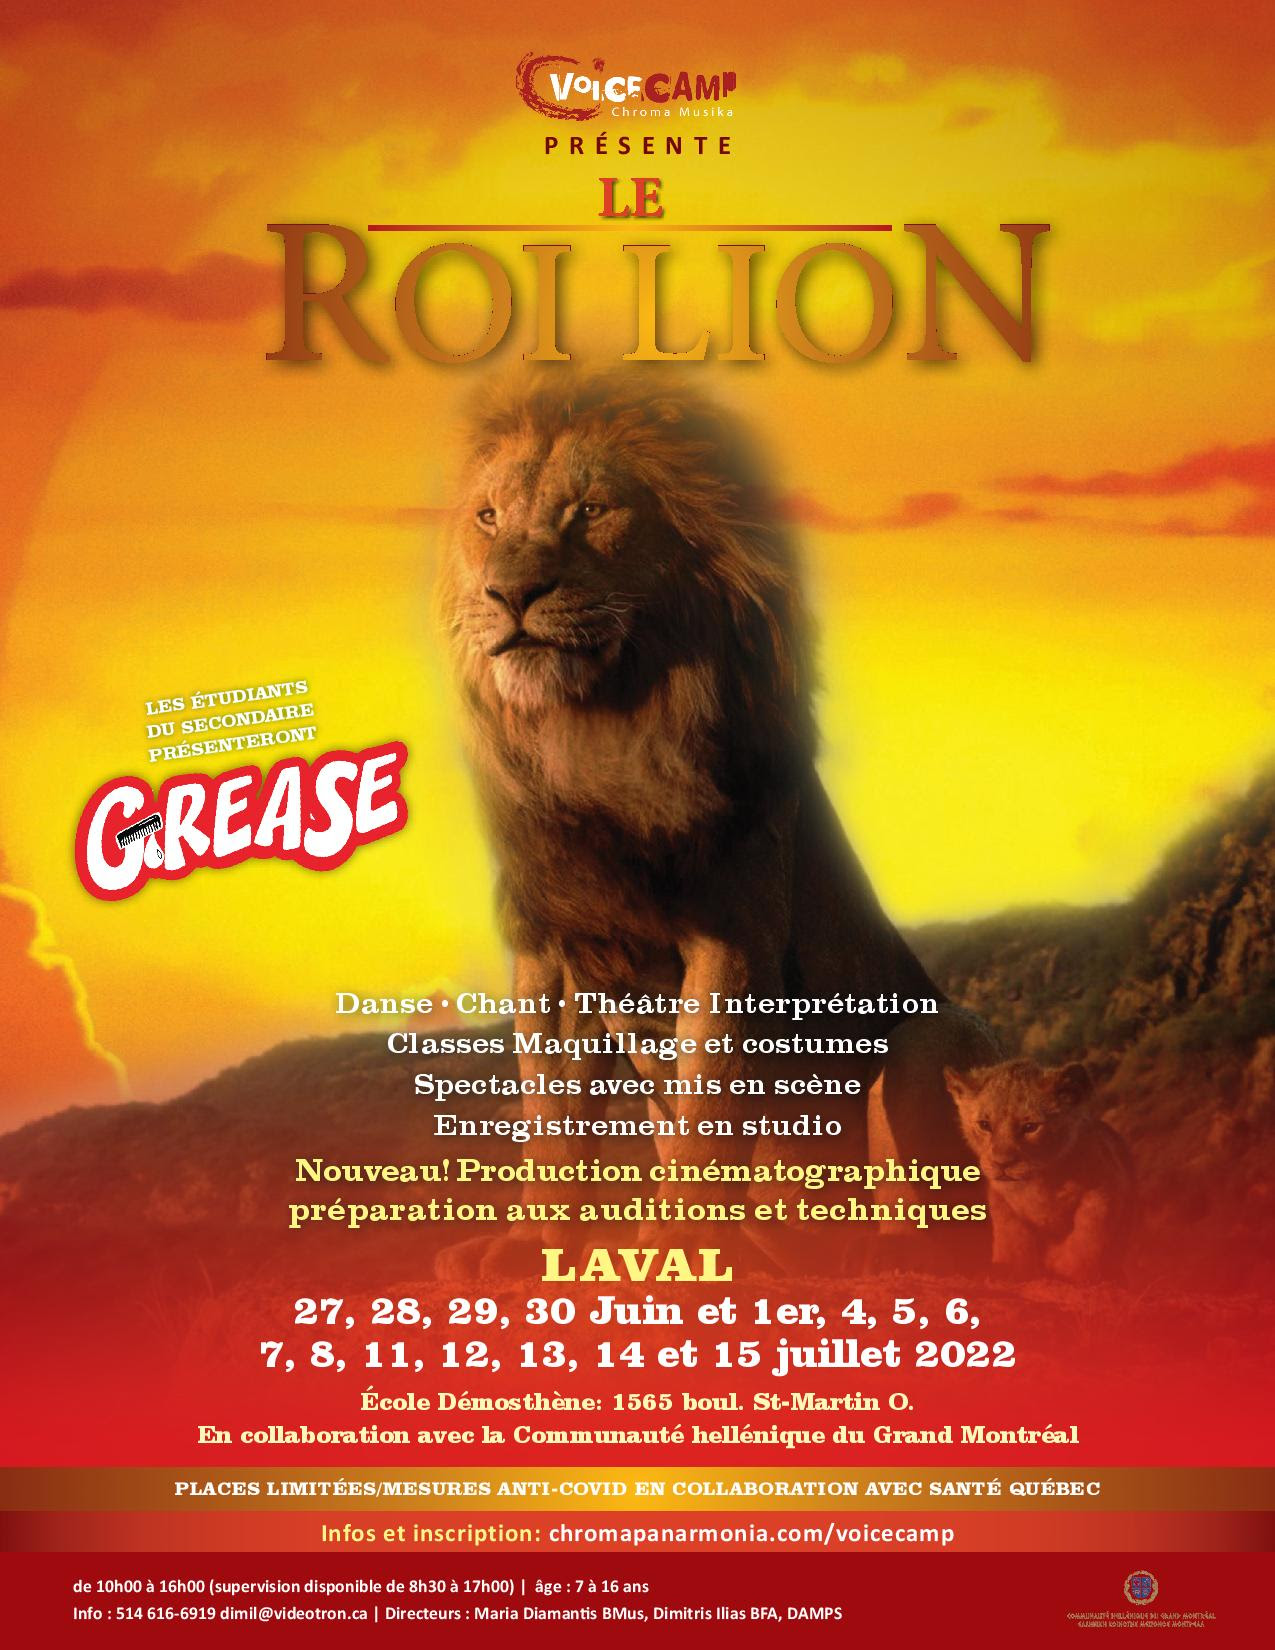 RAPPEL : Camp Vocal – Le Roi Lion